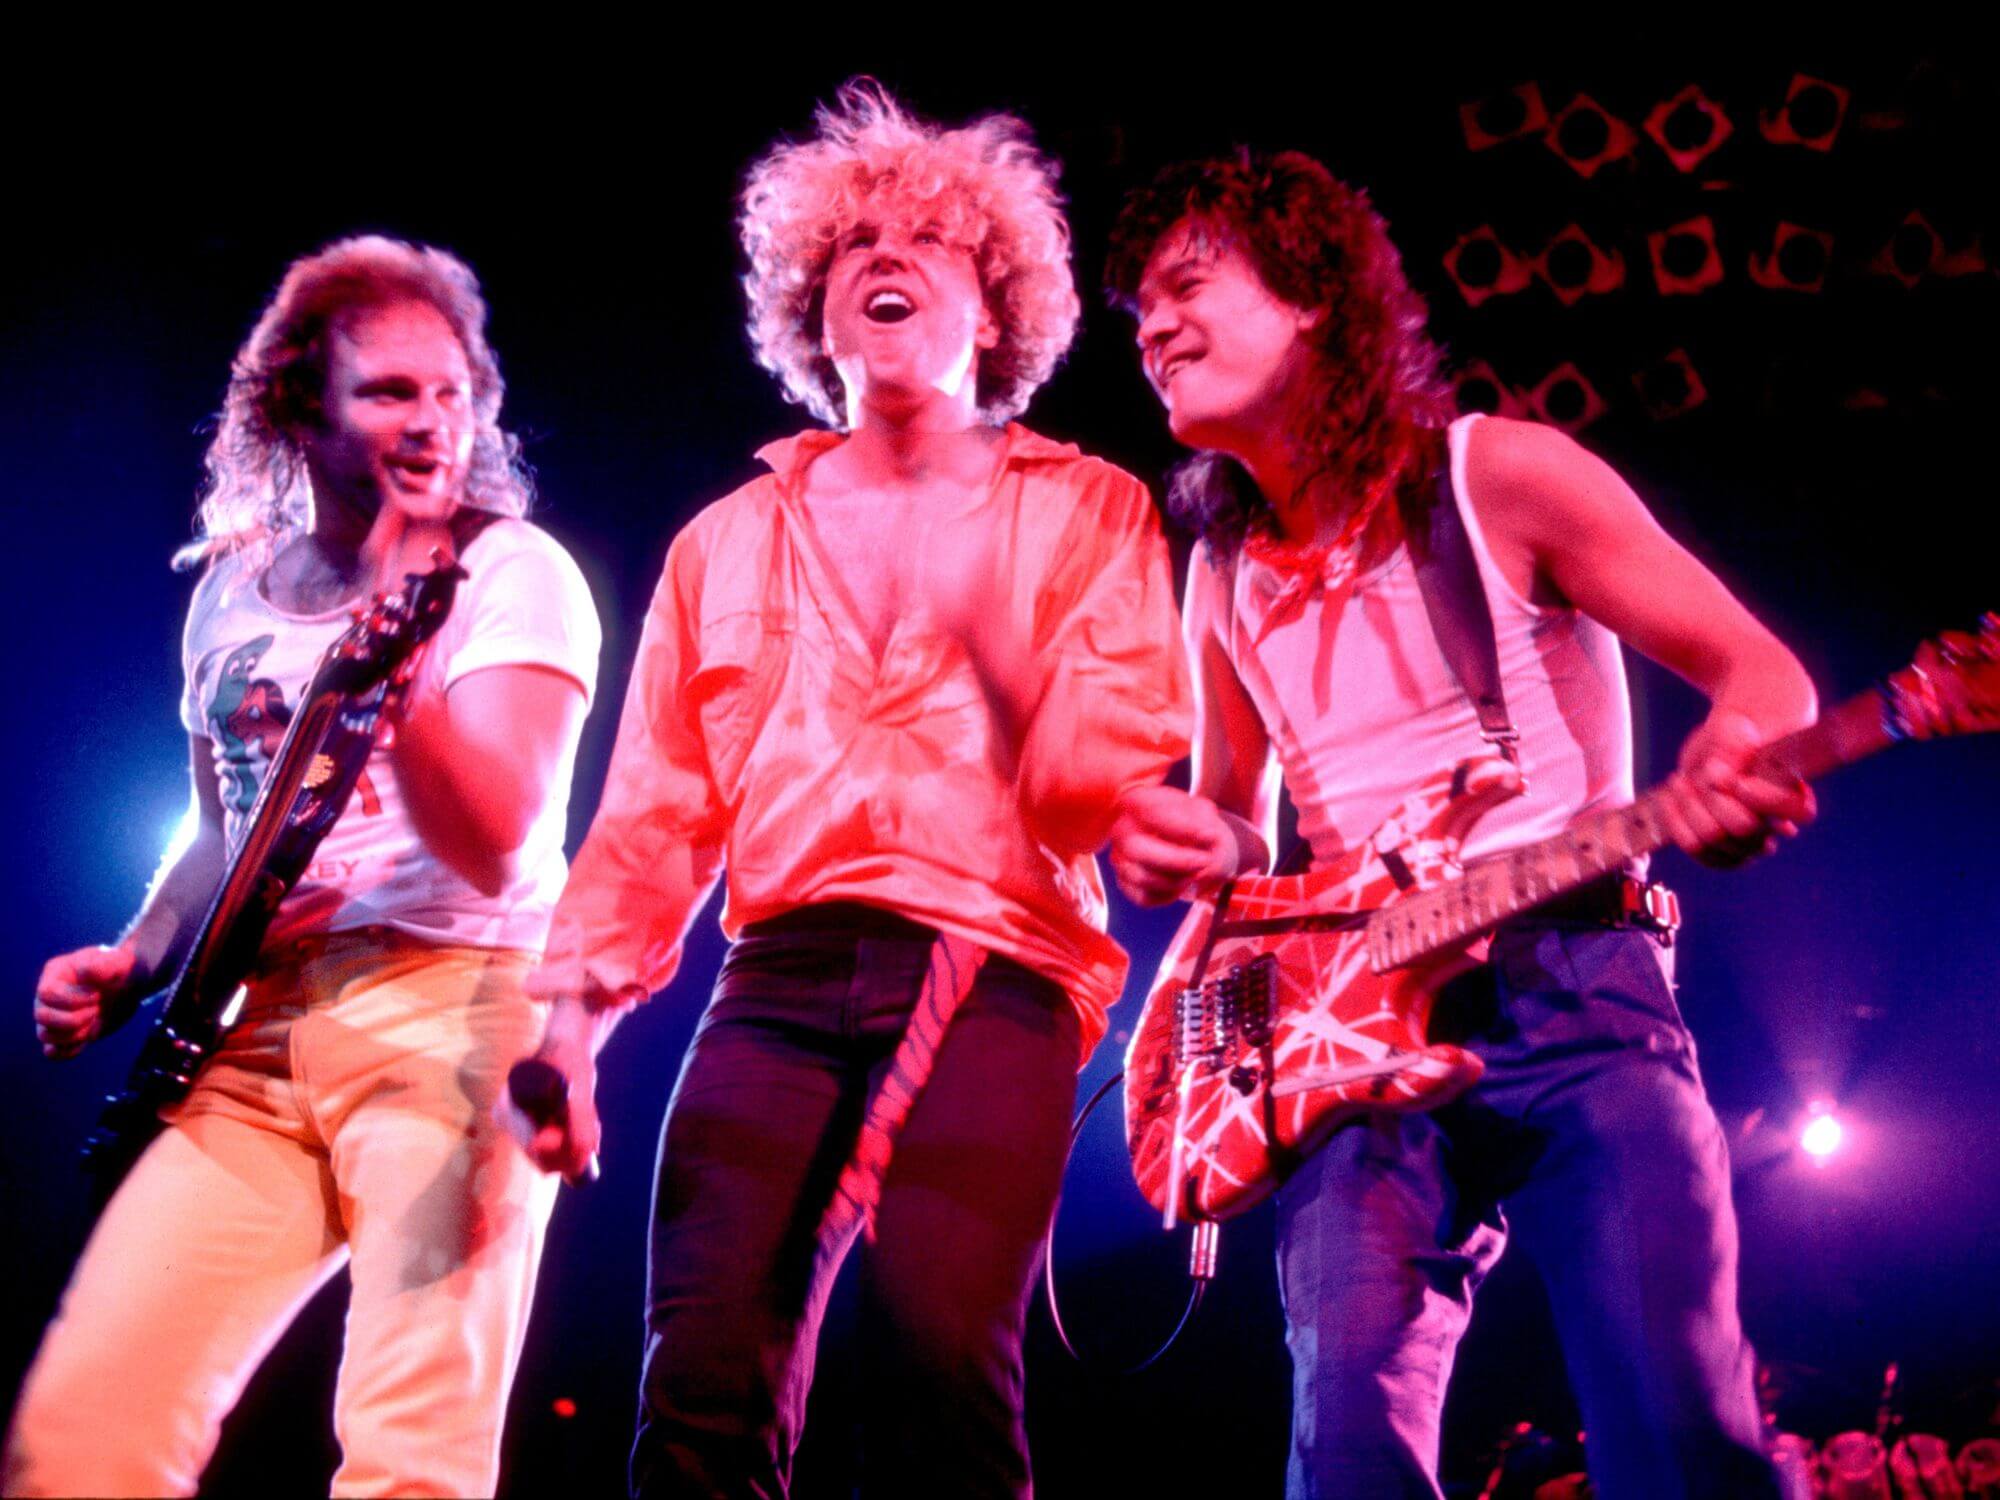 Van Halen onstage in 1986